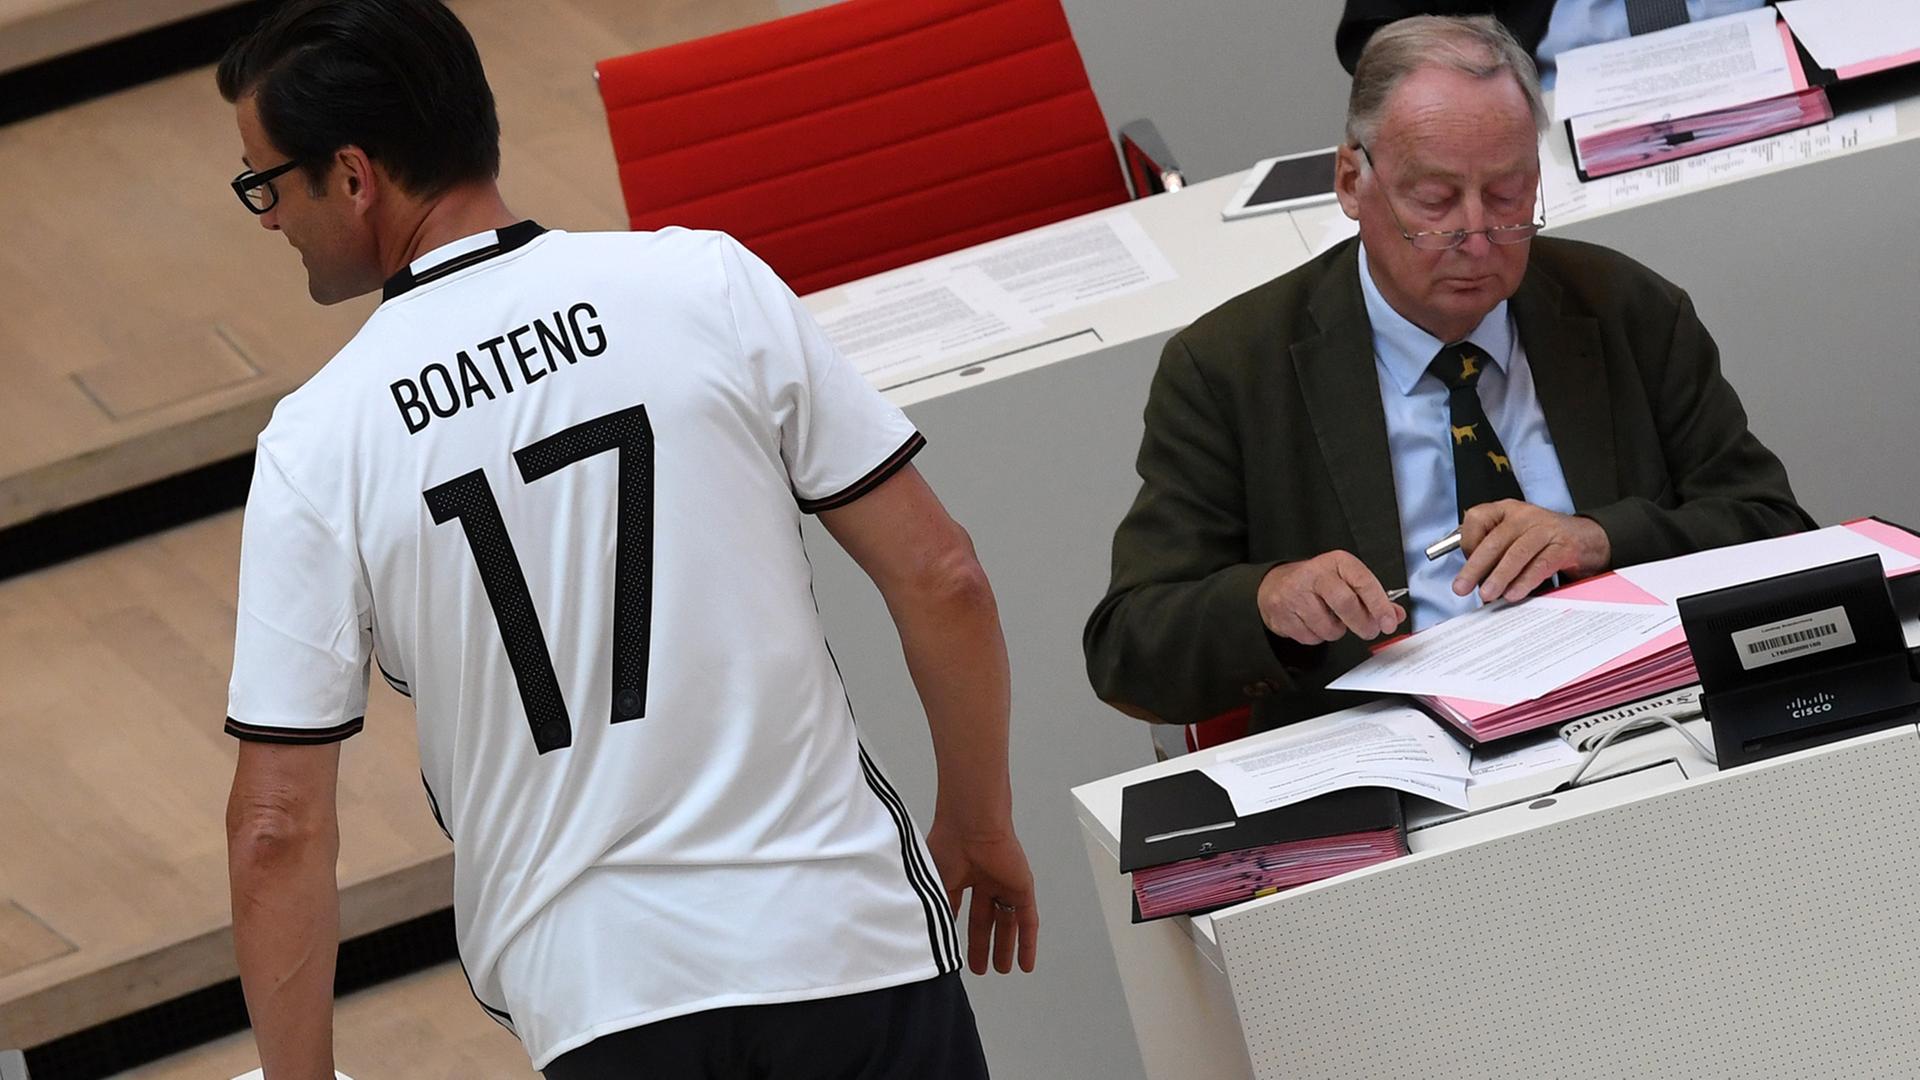 Der Abgeordnete Sven Petke, CDU, läuft am 8. Juni 2016 in einem Fußball-Shirt mit der Aufschrift "Boateng" im Landtag in Potsdam auf seinen Platz im Plenum. Rechts sitzt der Vorsitzende der AfD-Fraktion, Alexander Gauland.